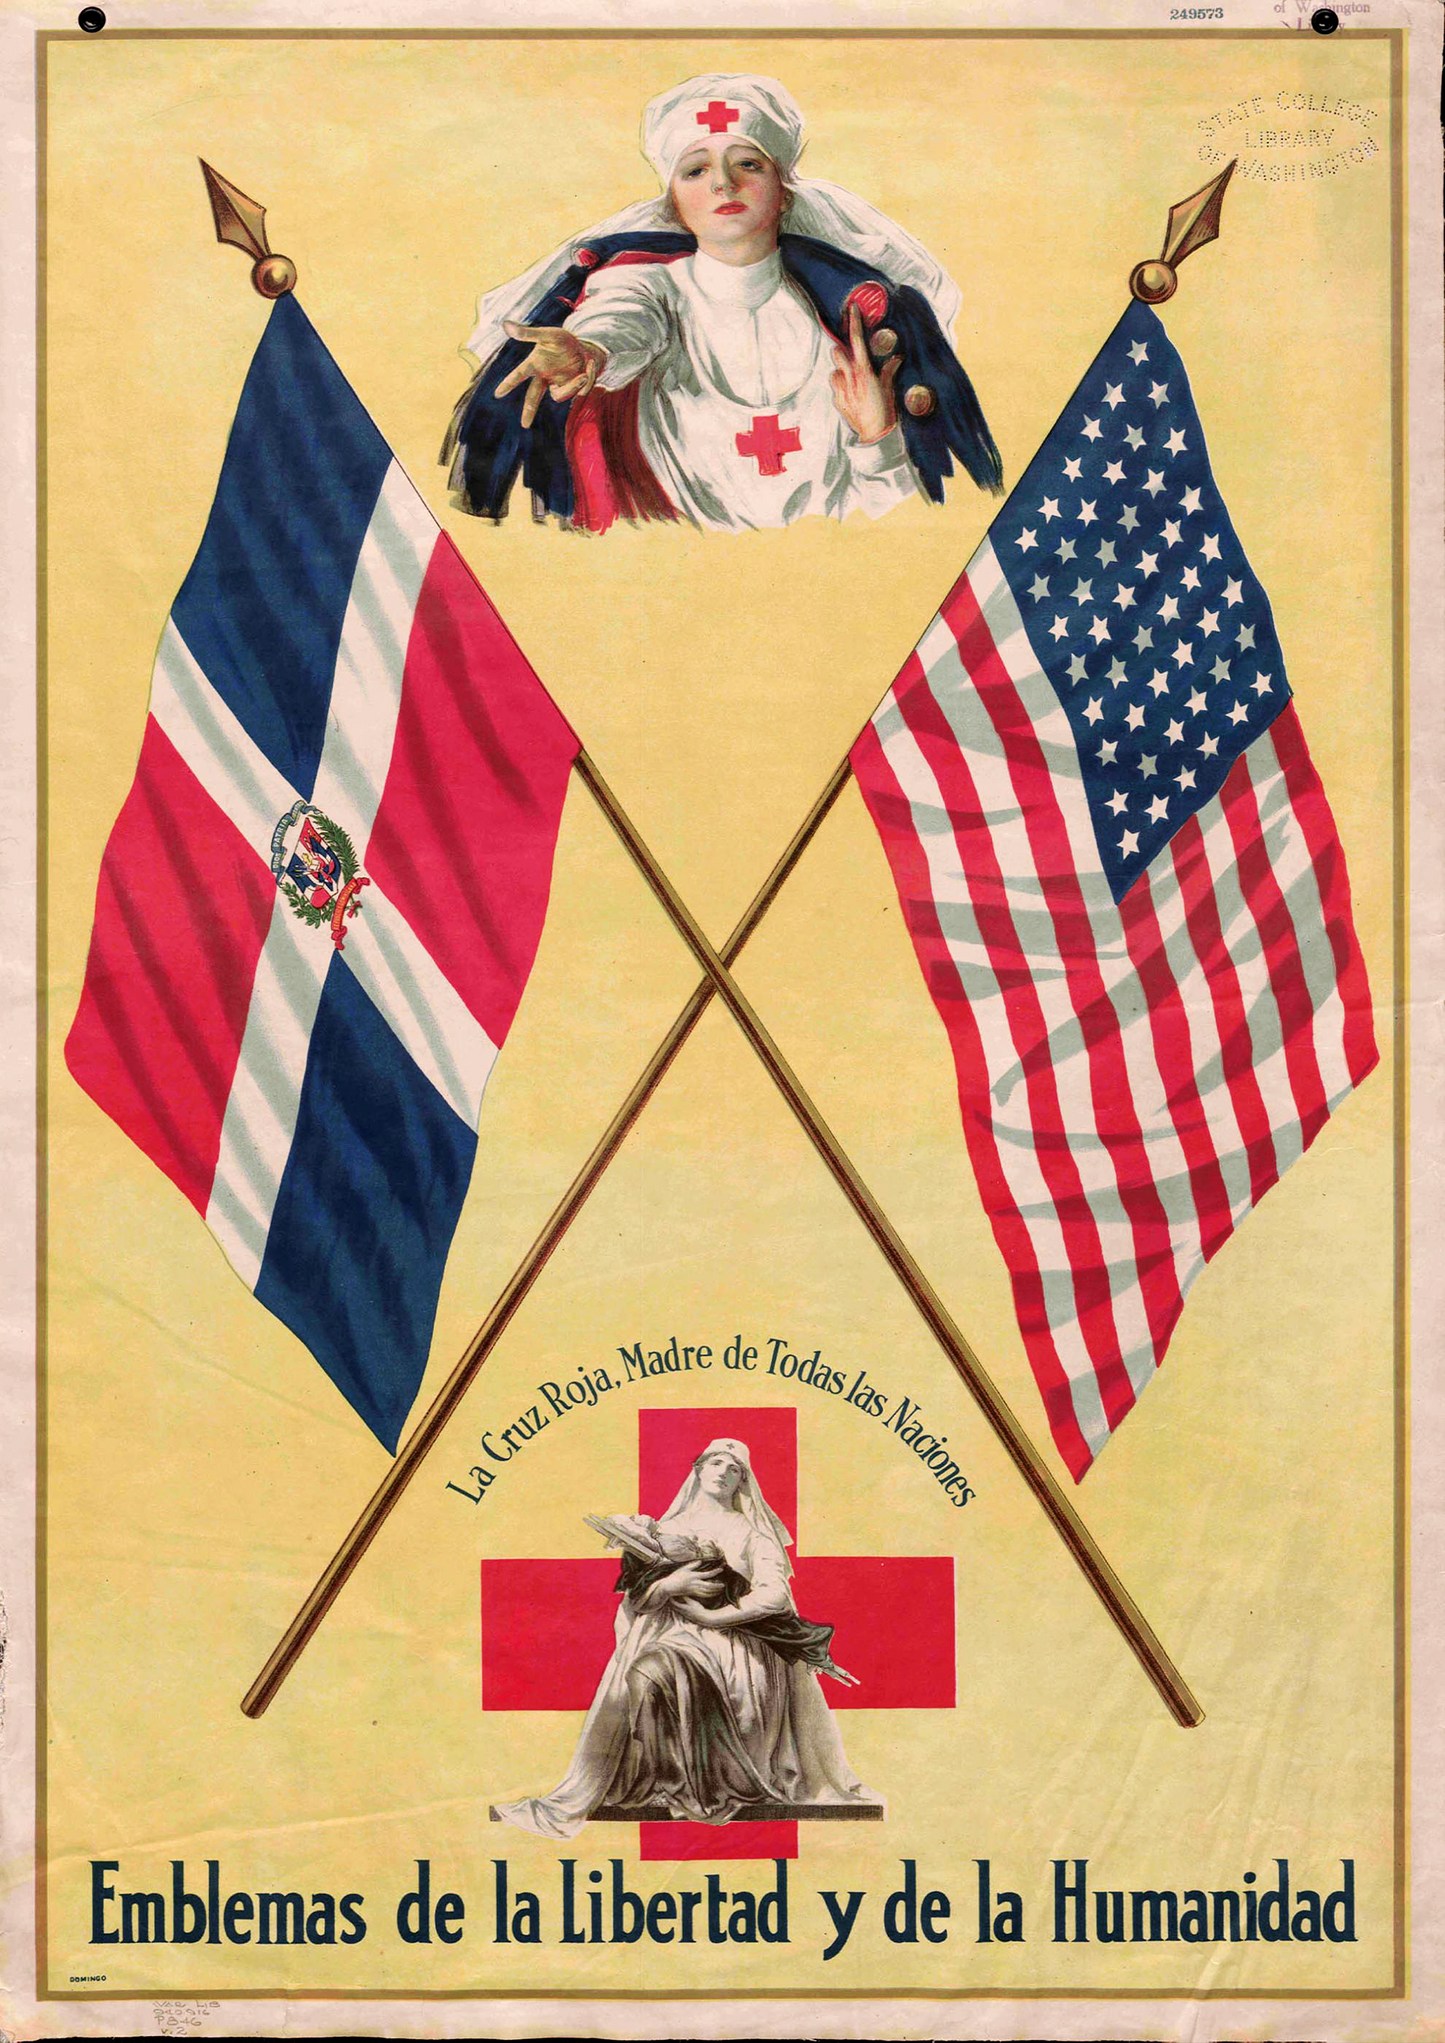 USA - Dominican Republic Friendship Poster